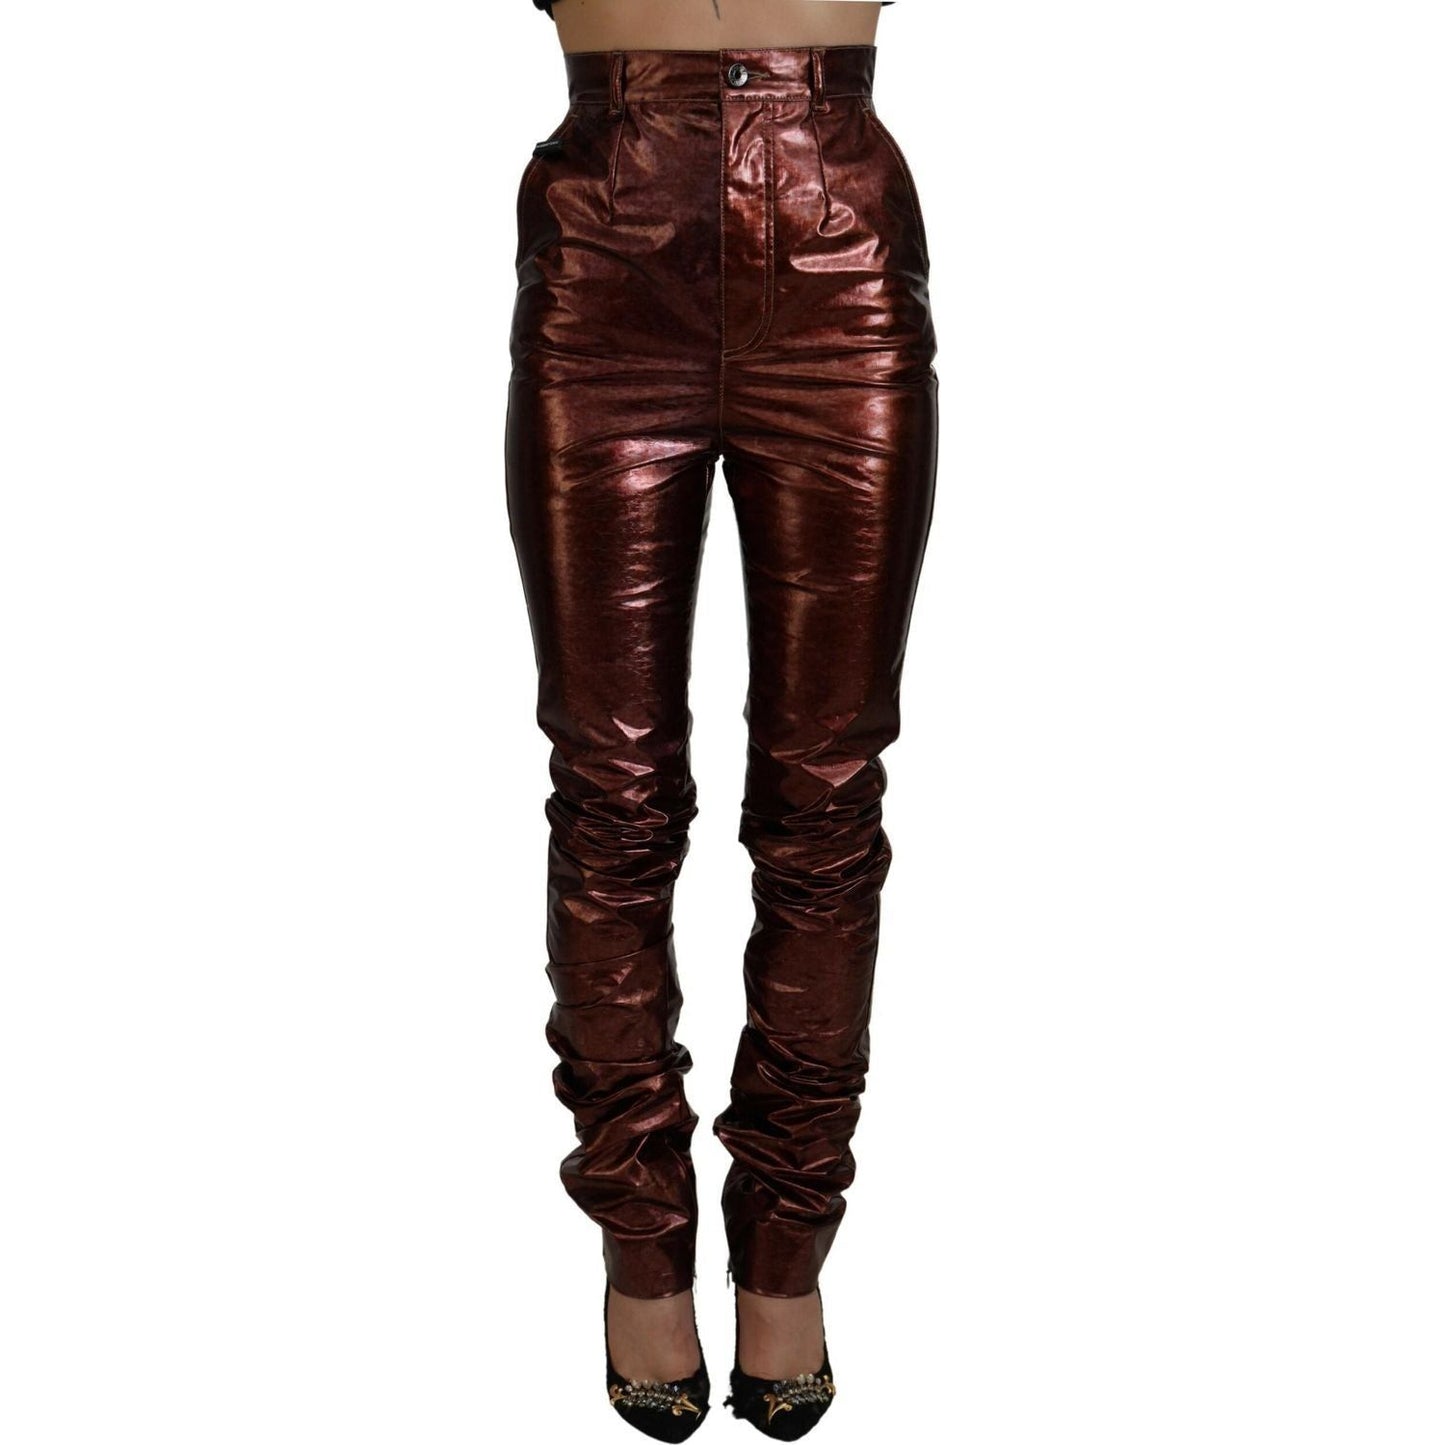 Dolce & GabbanaHigh Waist Skinny Jeans in Metallic BronzeMcRichard Designer Brands£569.00